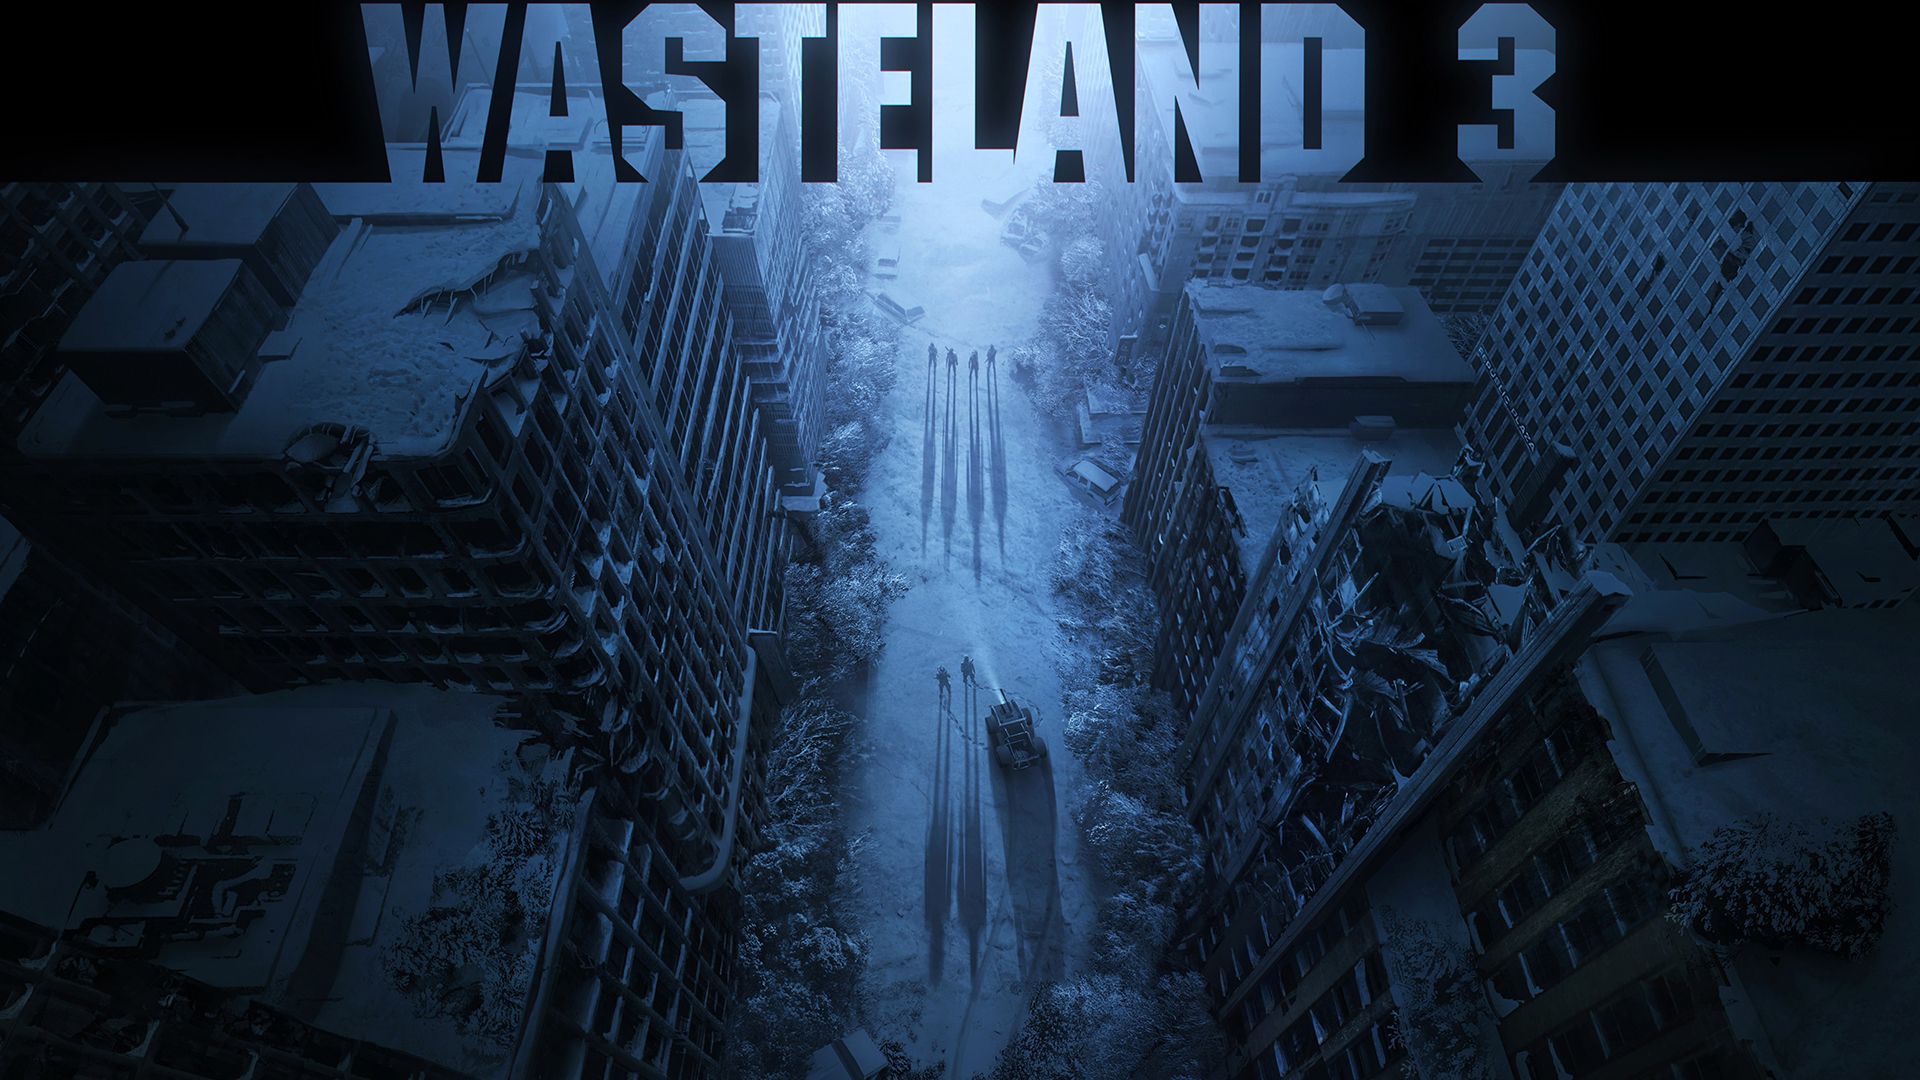 Wasteland 3 Wallpaper in Ultra HDK